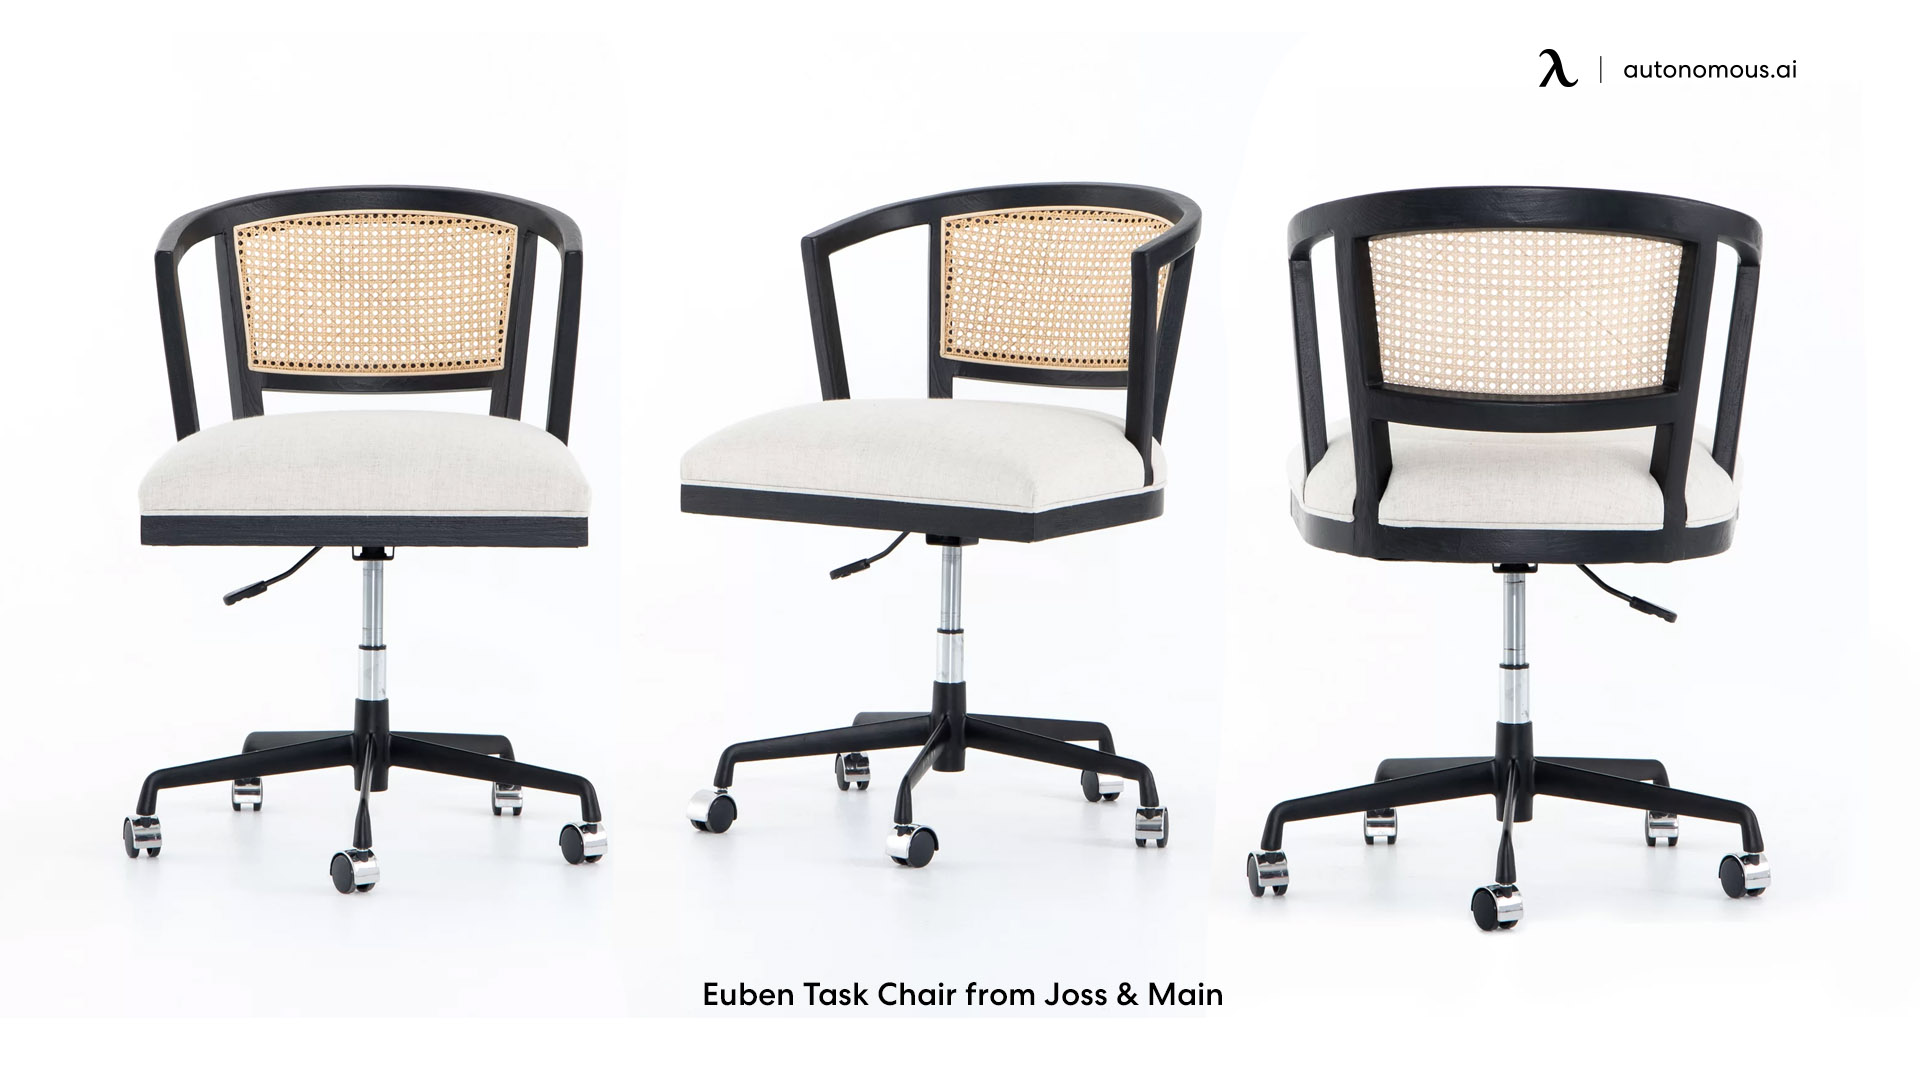 Euben cozy office chair from Joss & Main